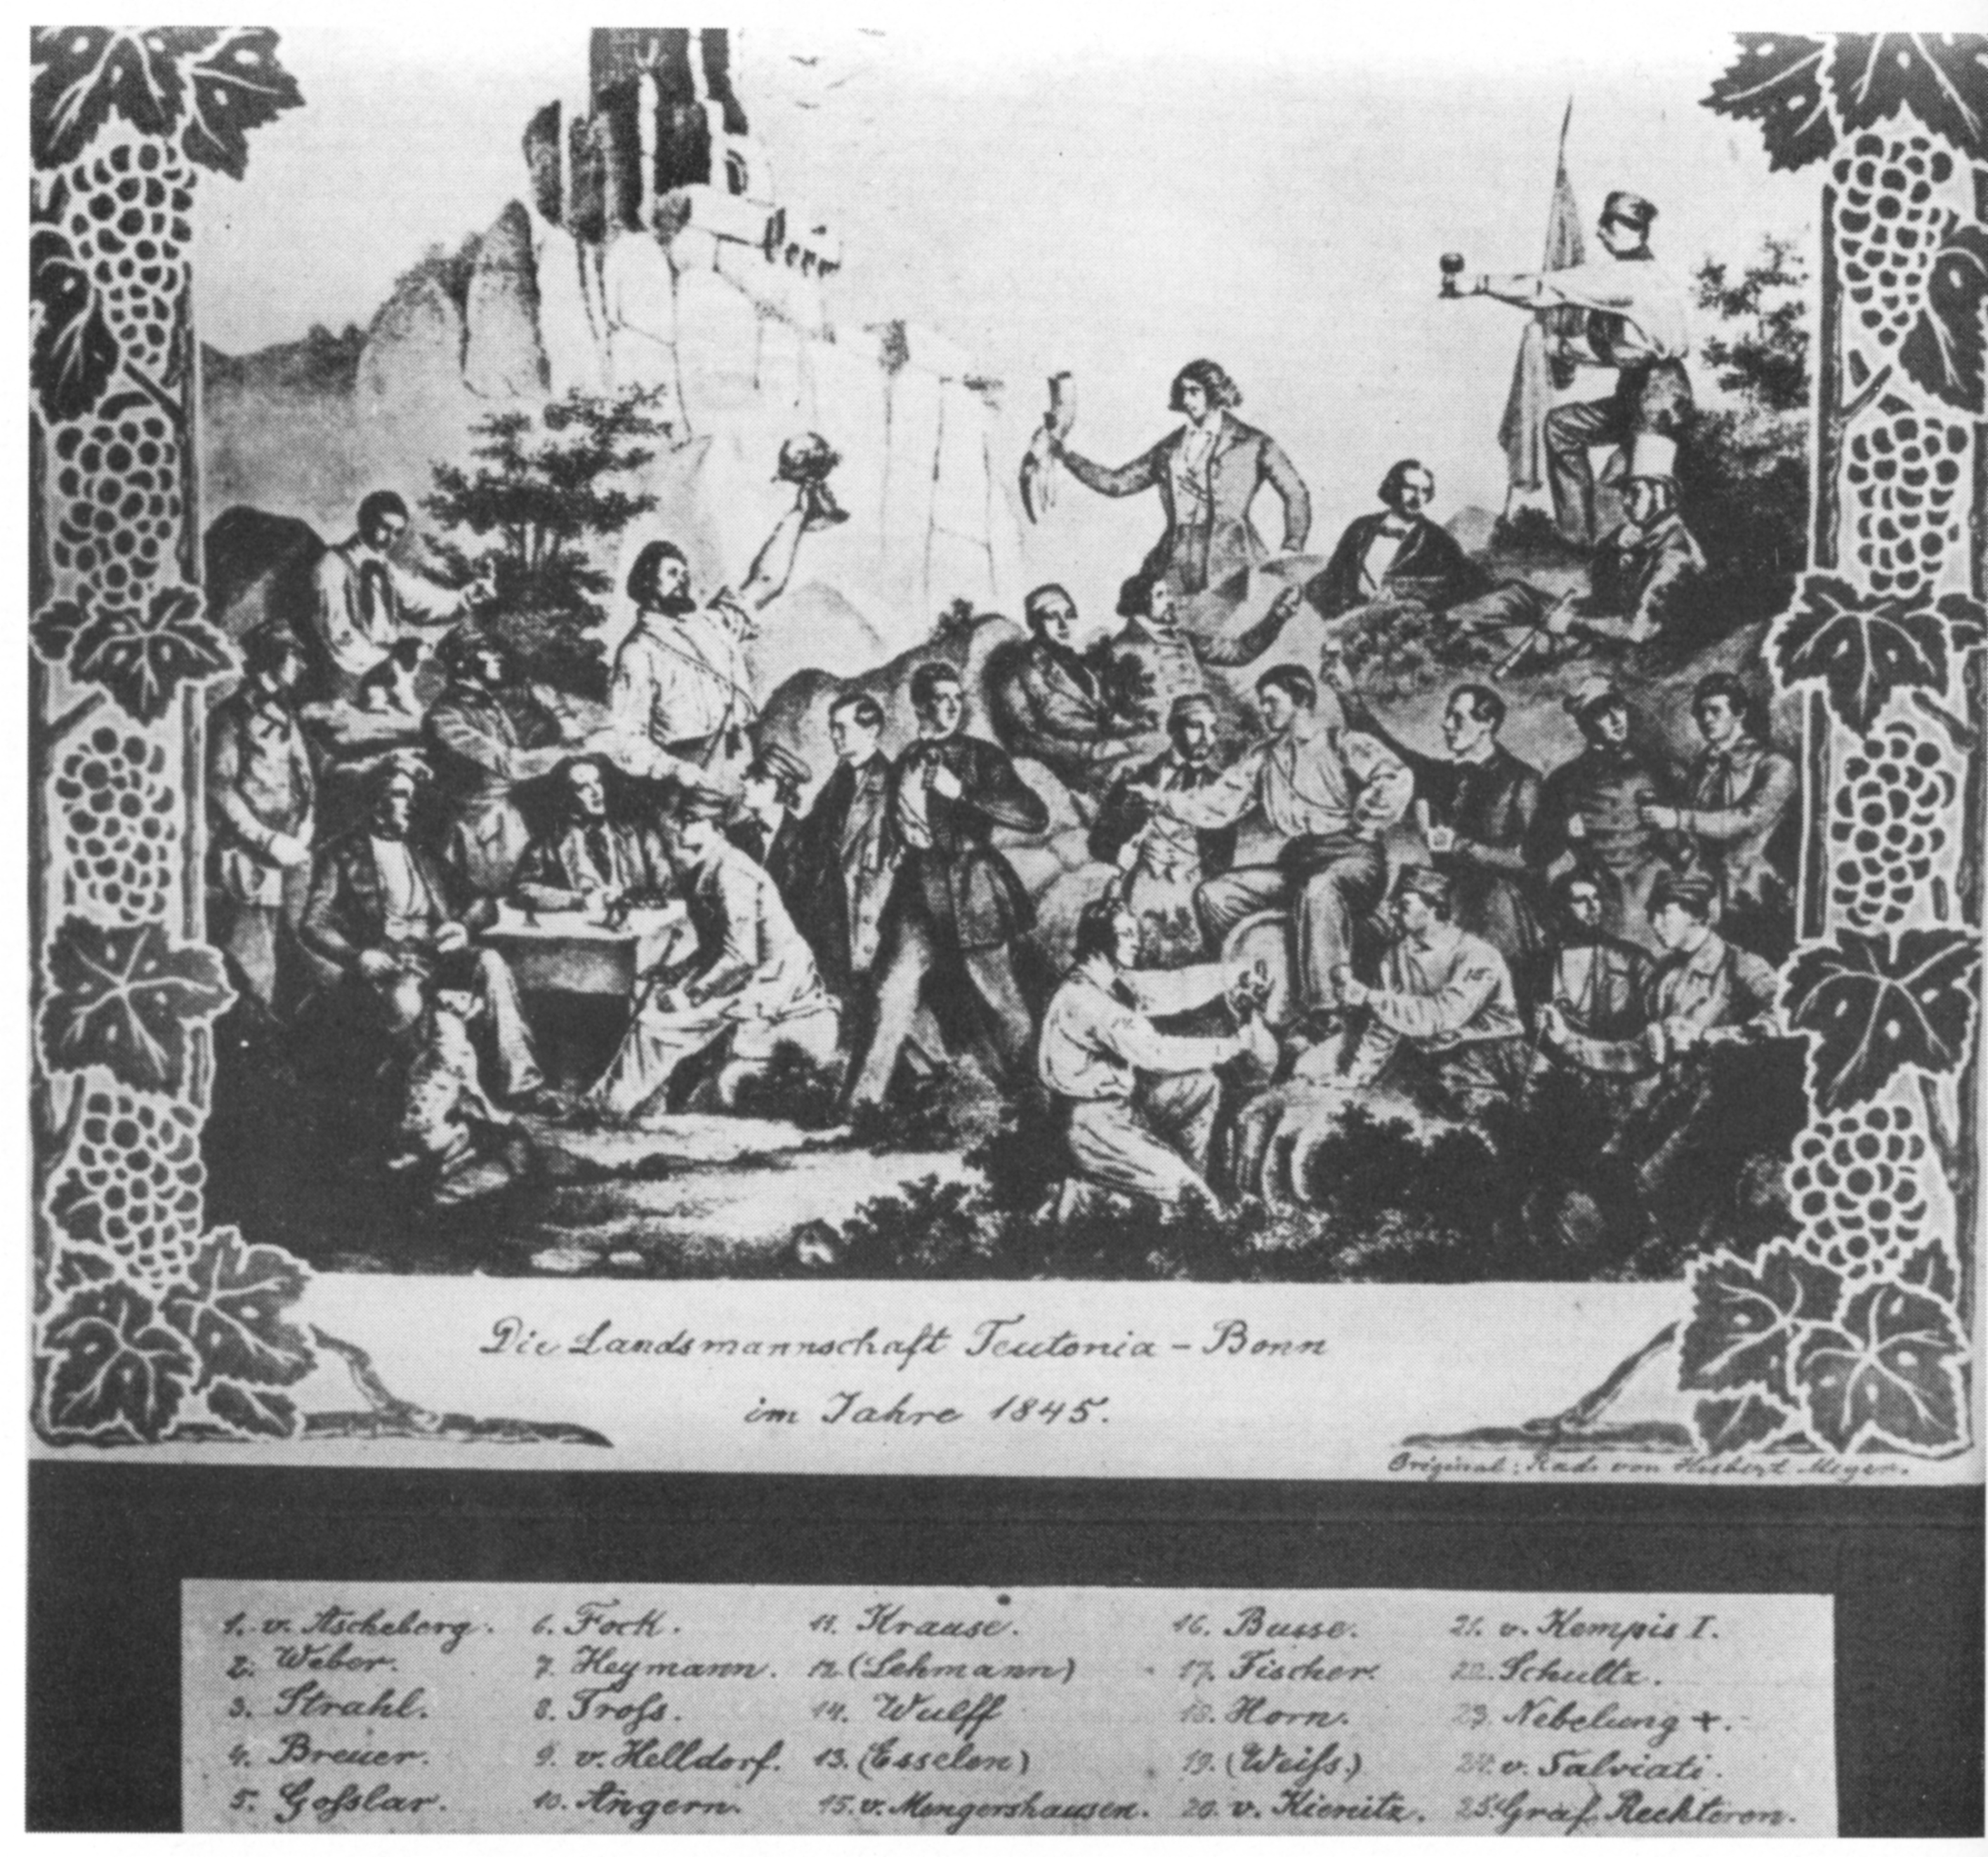 1845 Landsmannschaft Teutonia Bonn